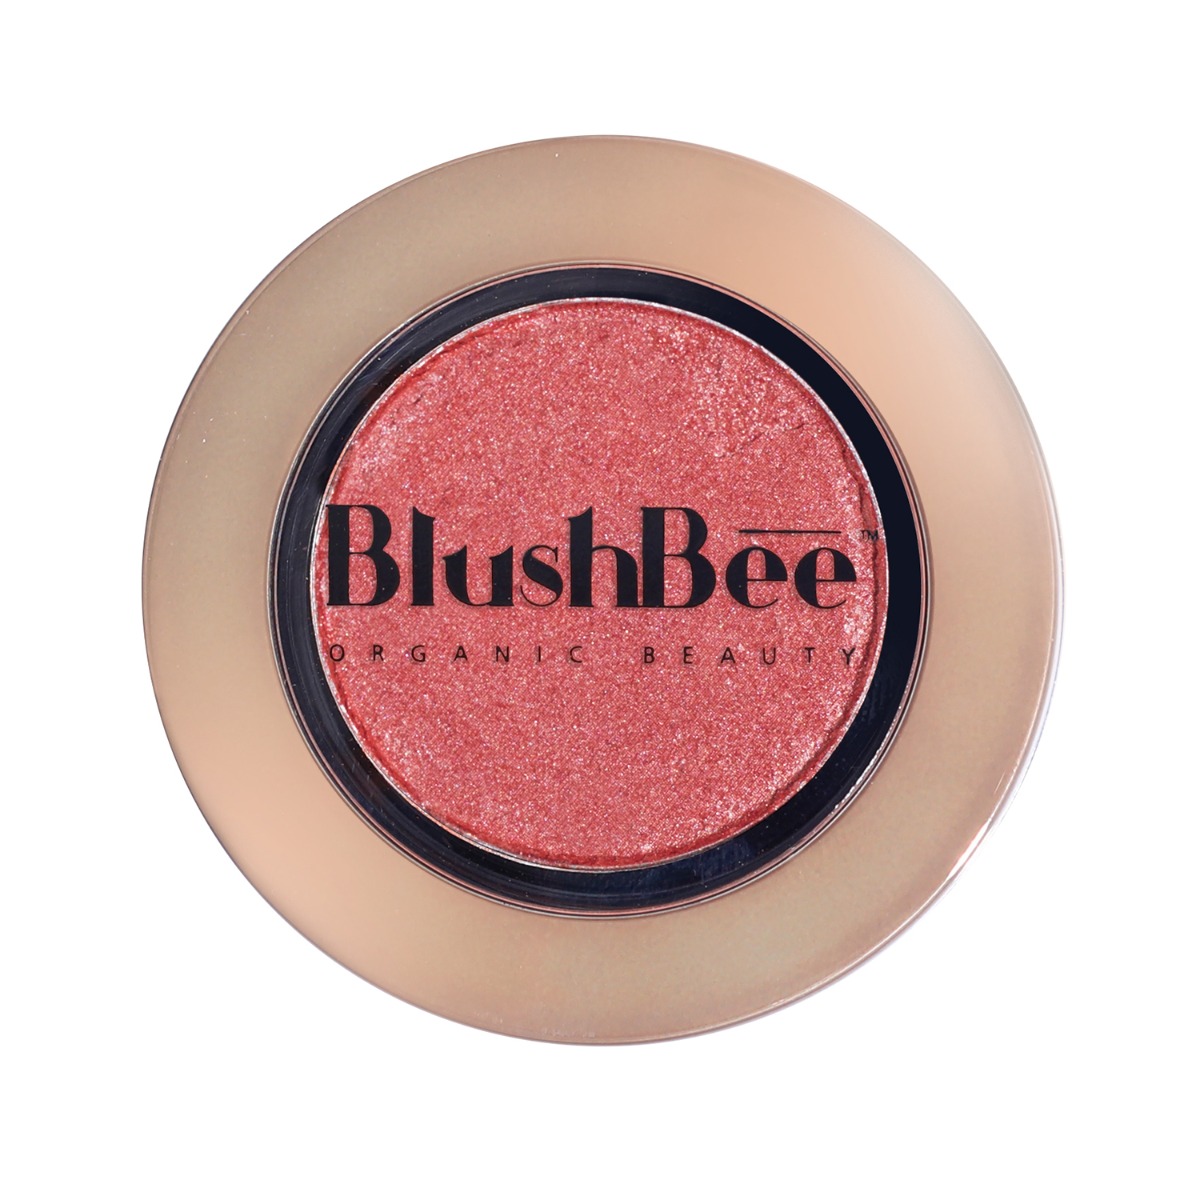 BlushBee Organic Beauty Natural Glow Organic Blush - Ursa, 2.3gm